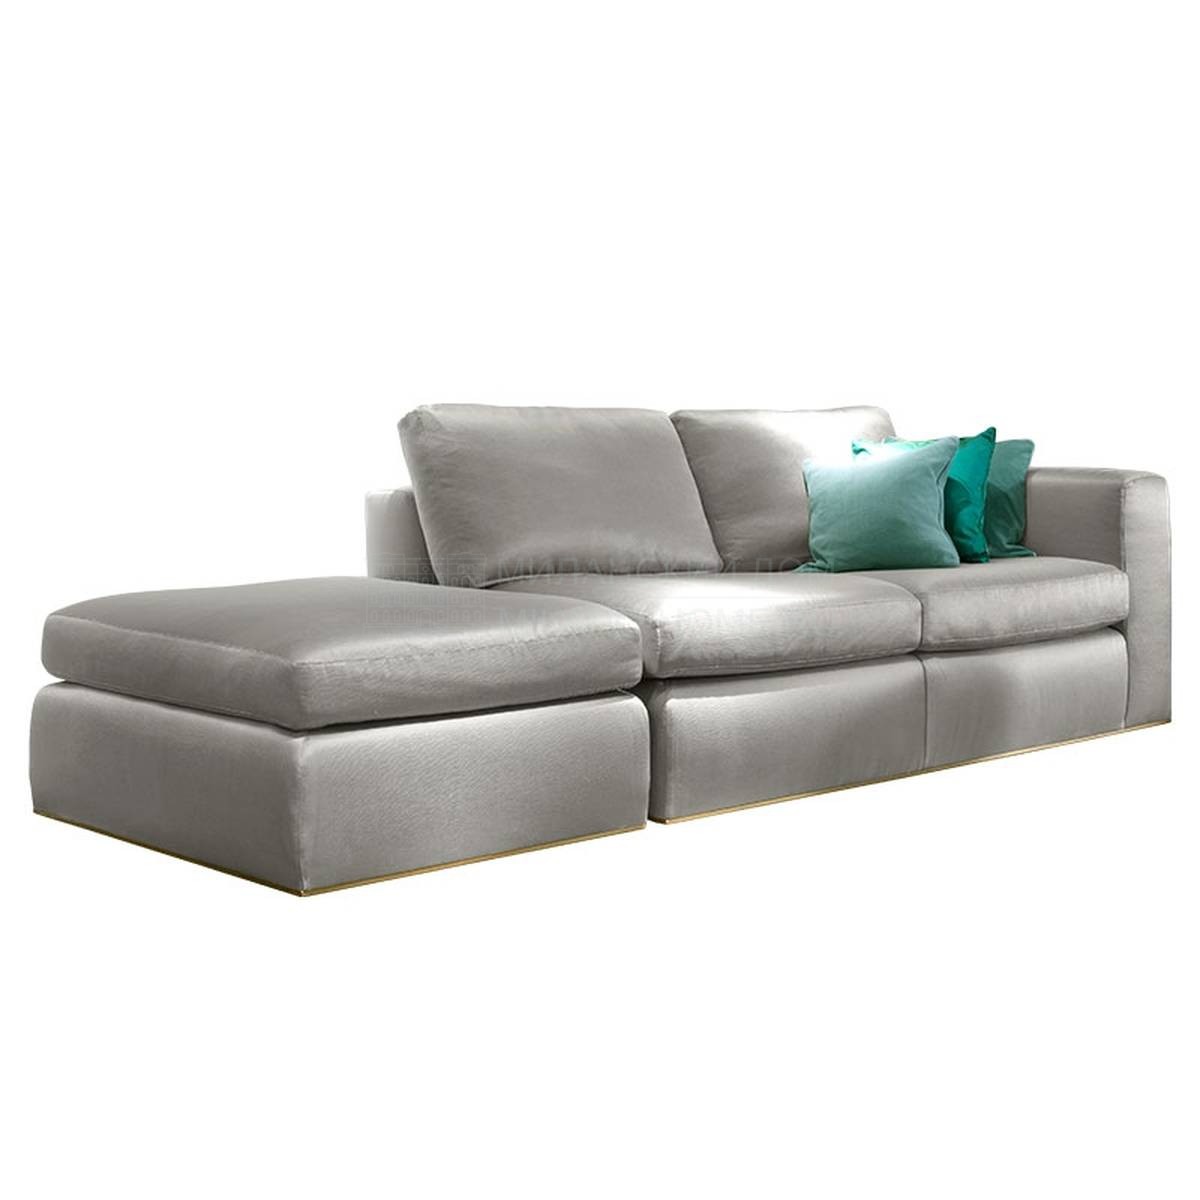 Прямой диван Ciro 2 sofa из Италии фабрики SOFTHOUSE